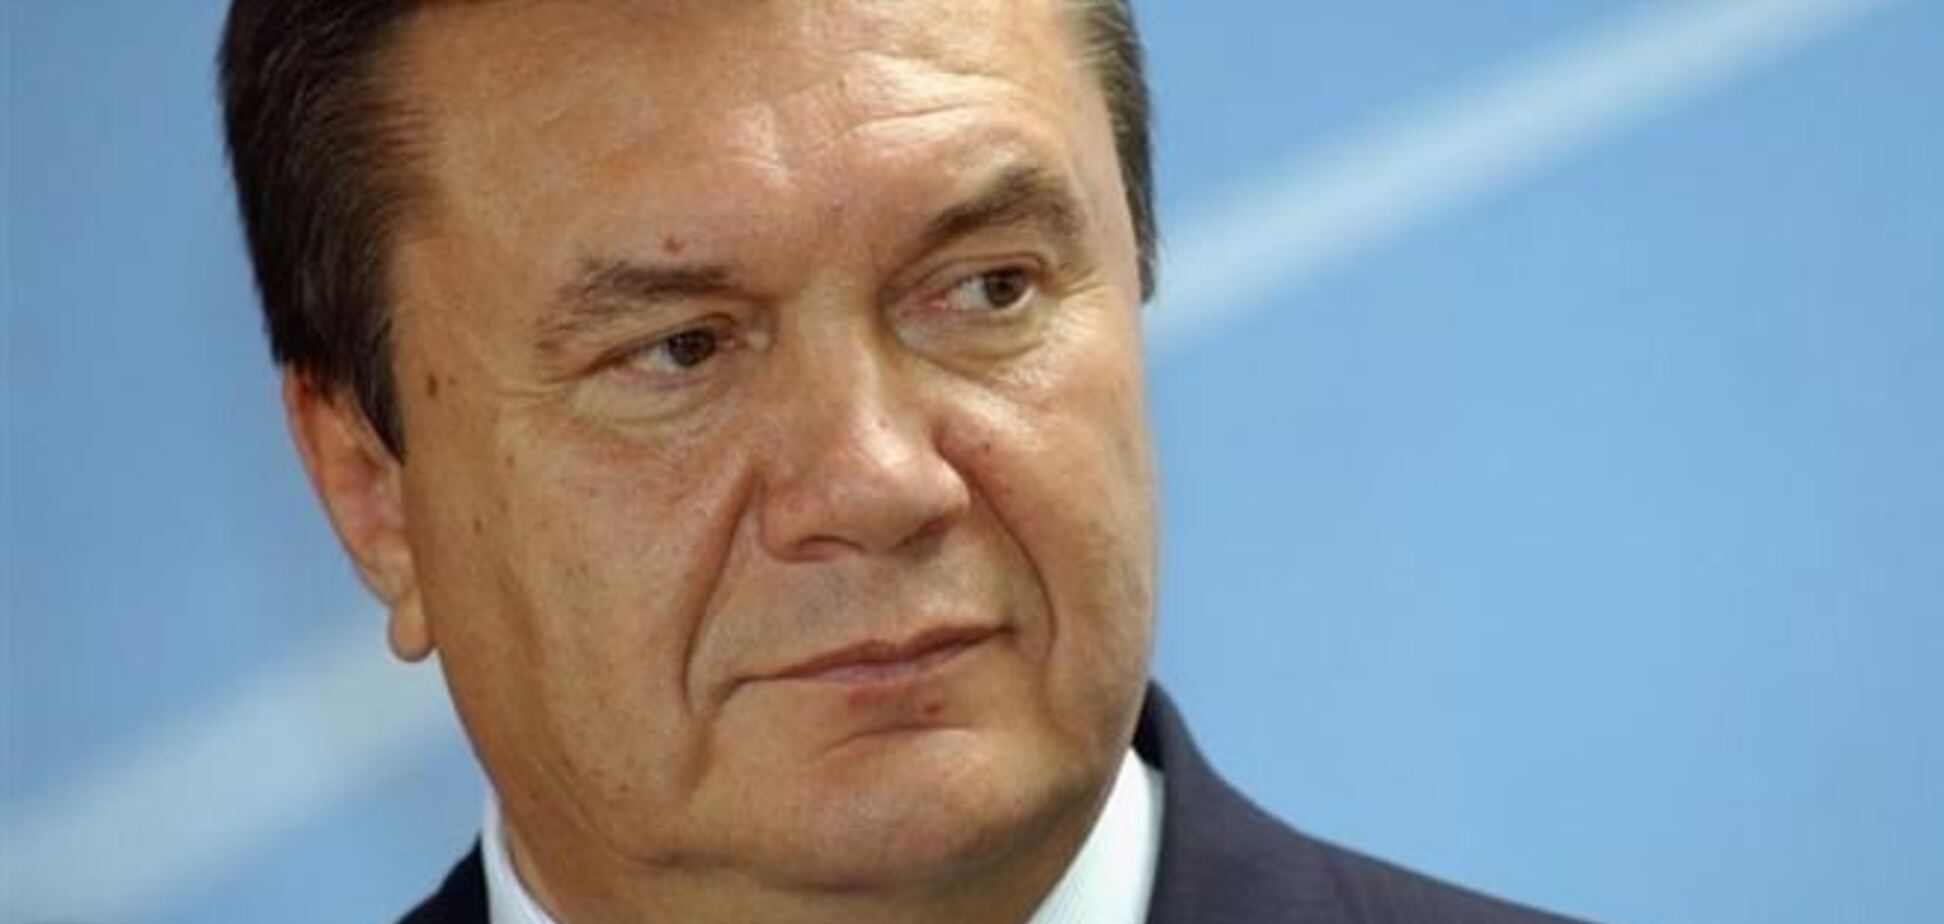 За призывы людей к оружию оппозиция должна предстать перед судом - Янукович